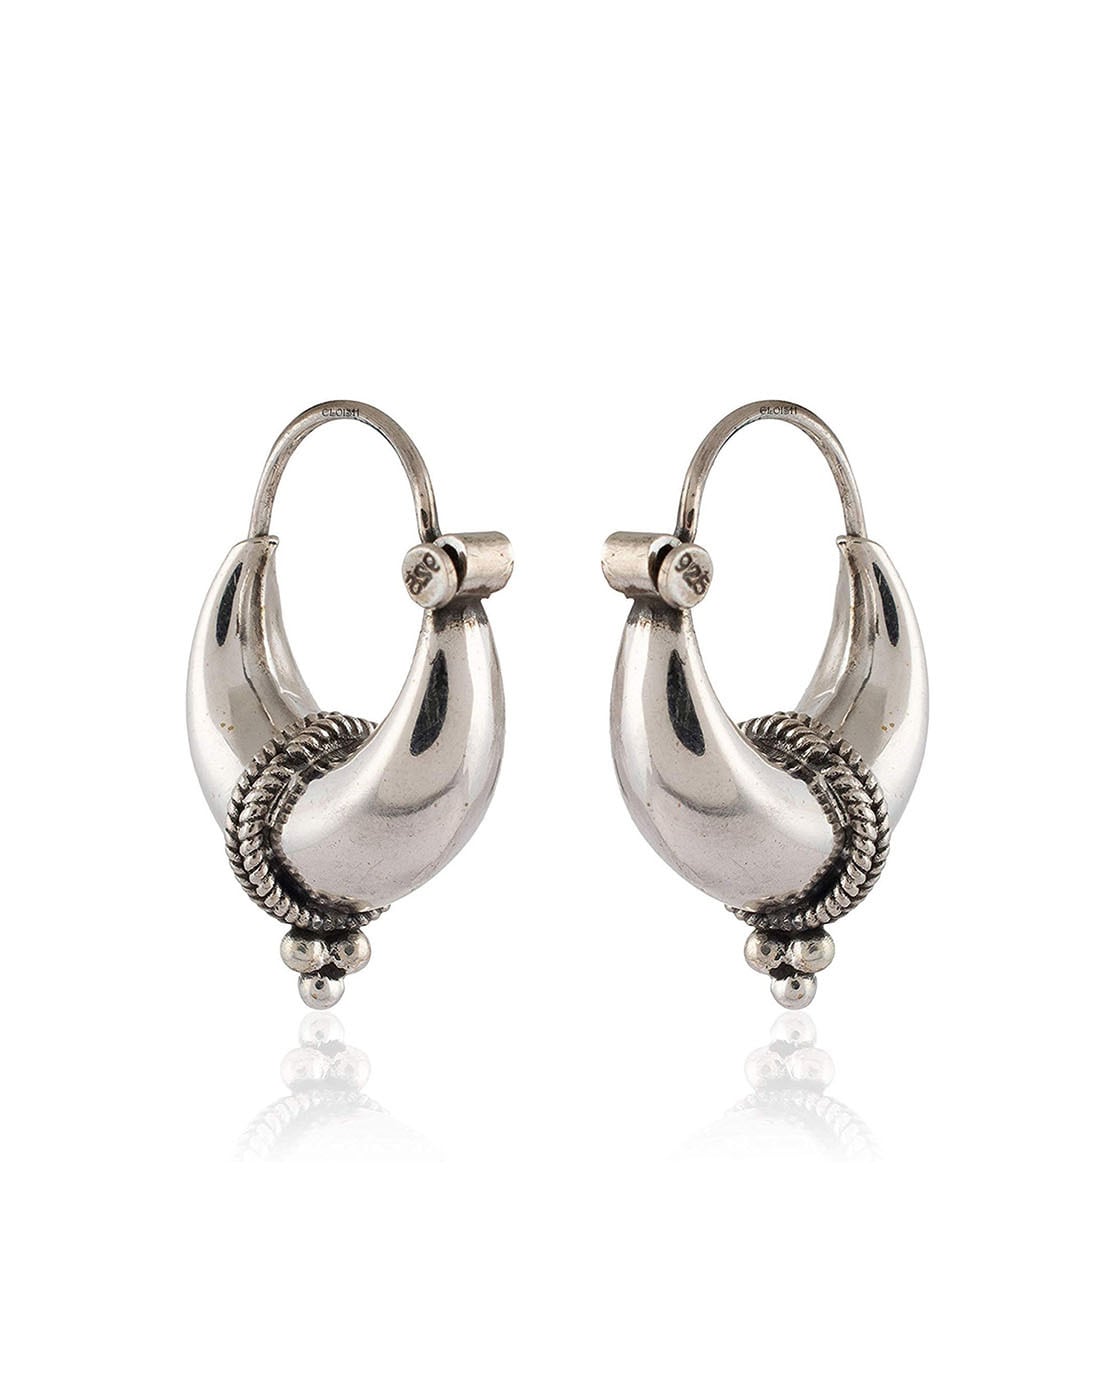 Flipkartcom  Buy Men Style Hoop Earrings Stainless Steel Punk Men Earrings  Ball Pendant Circle Ring Earring Piercing Jewelry Earrings Christmas Gift  Metal Hoop Earring Online at Best Prices in India